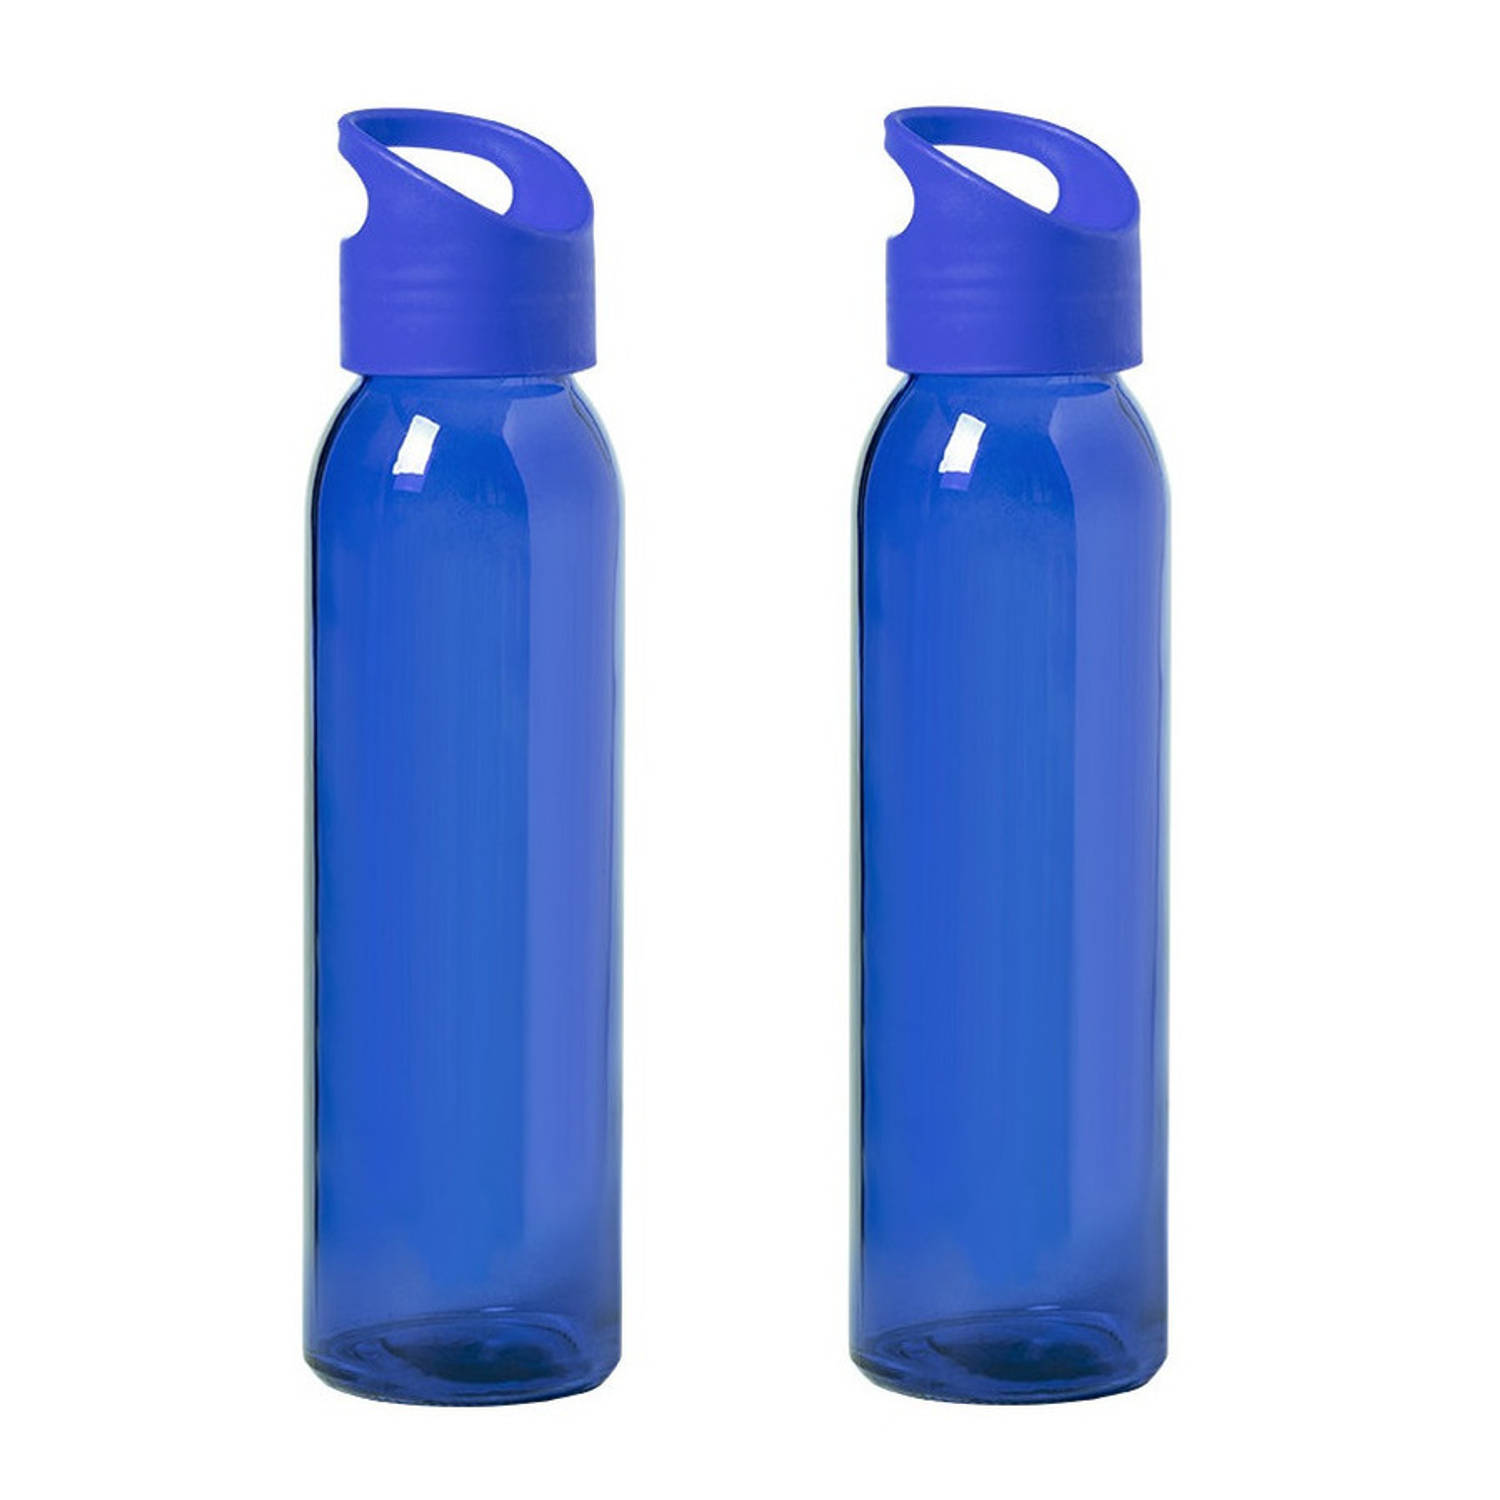 2x Stuks glazen waterfles/drinkfles blauw transparant met schroefdop met handvat 470 ml - Drinkflessen